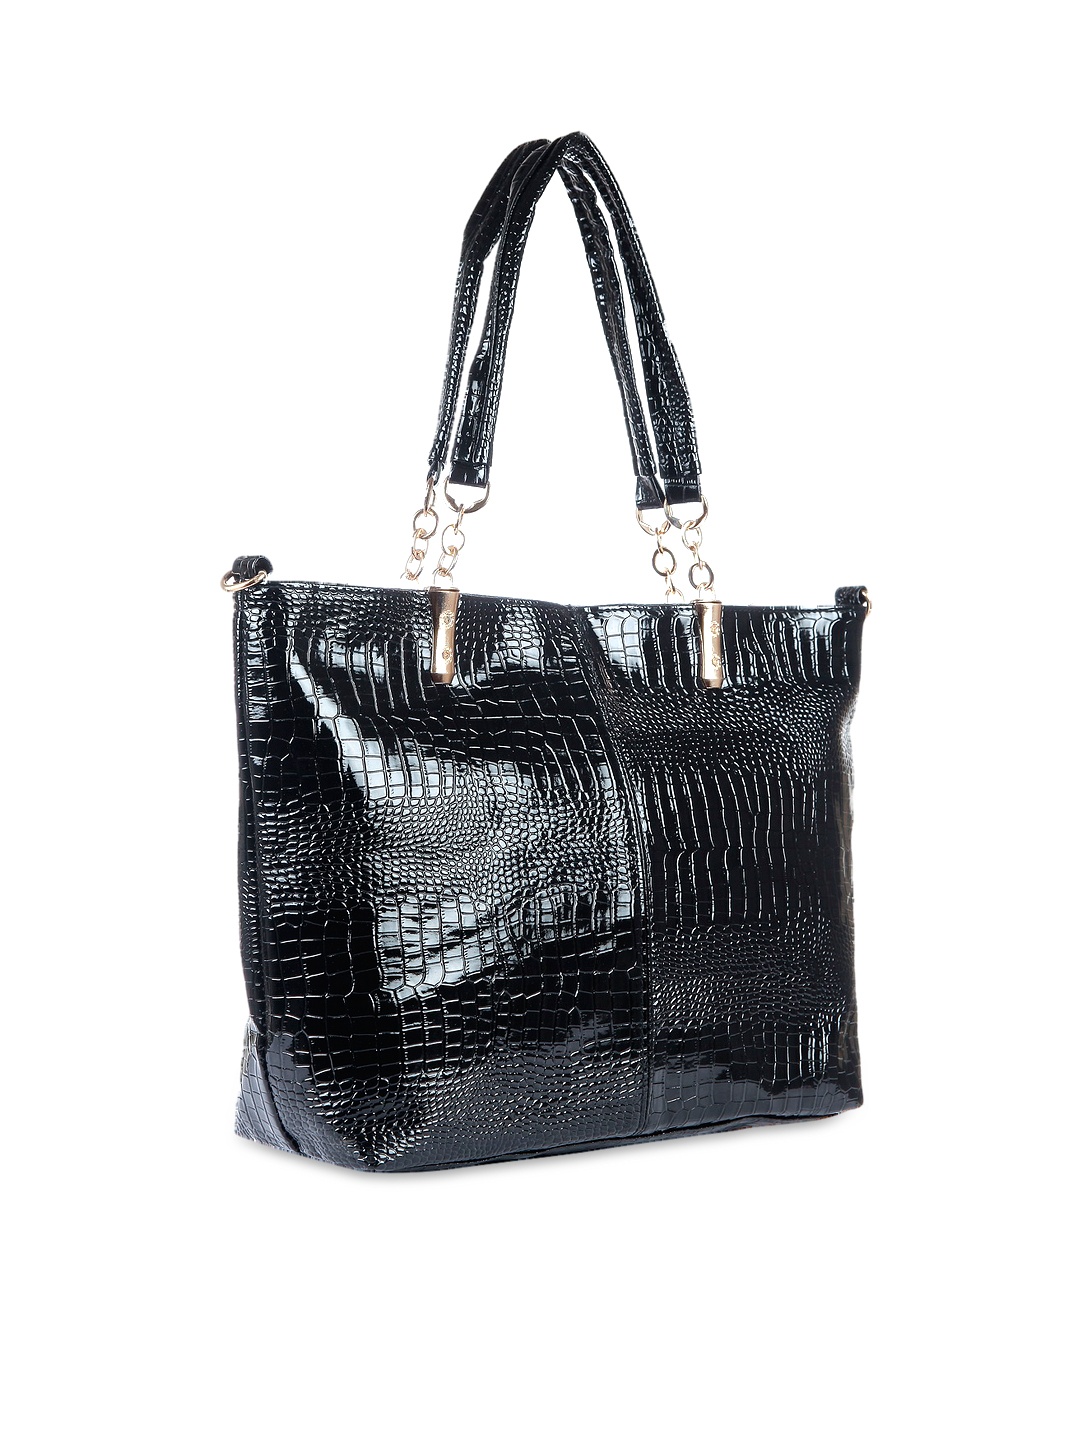 Myntra Satchel Bags Black Shoulder Bag 888826 | Buy Myntra Satchel Bags Handbags at best price ...